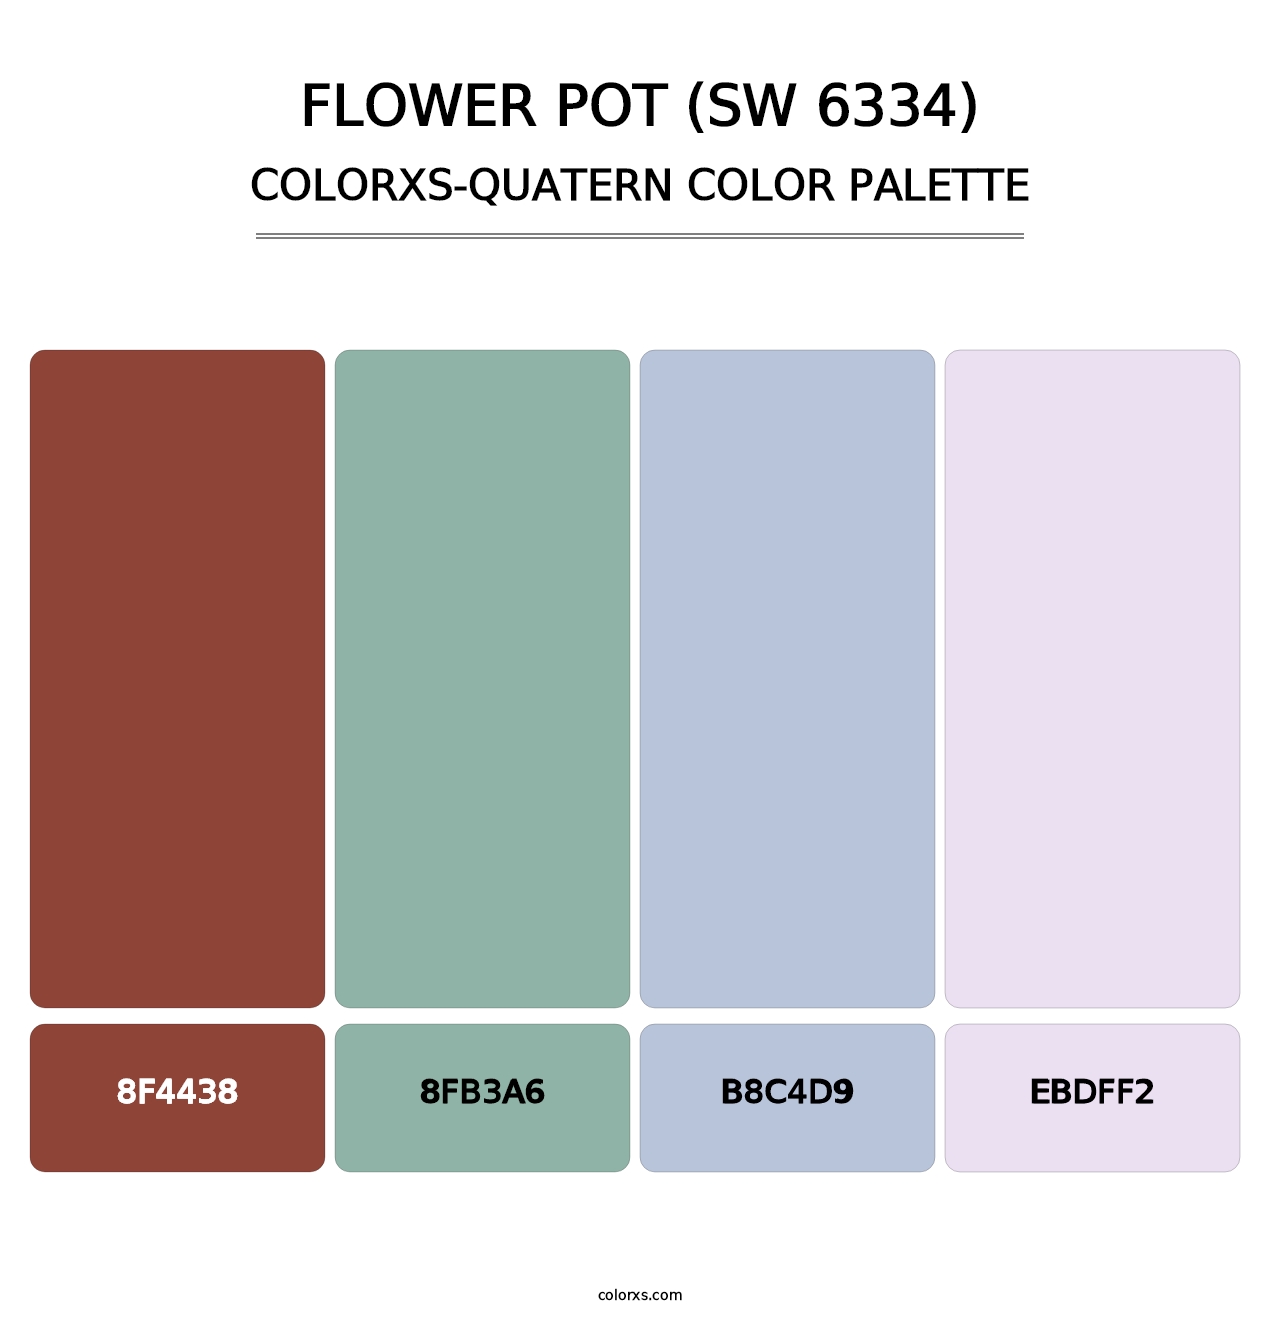 Flower Pot (SW 6334) - Colorxs Quatern Palette